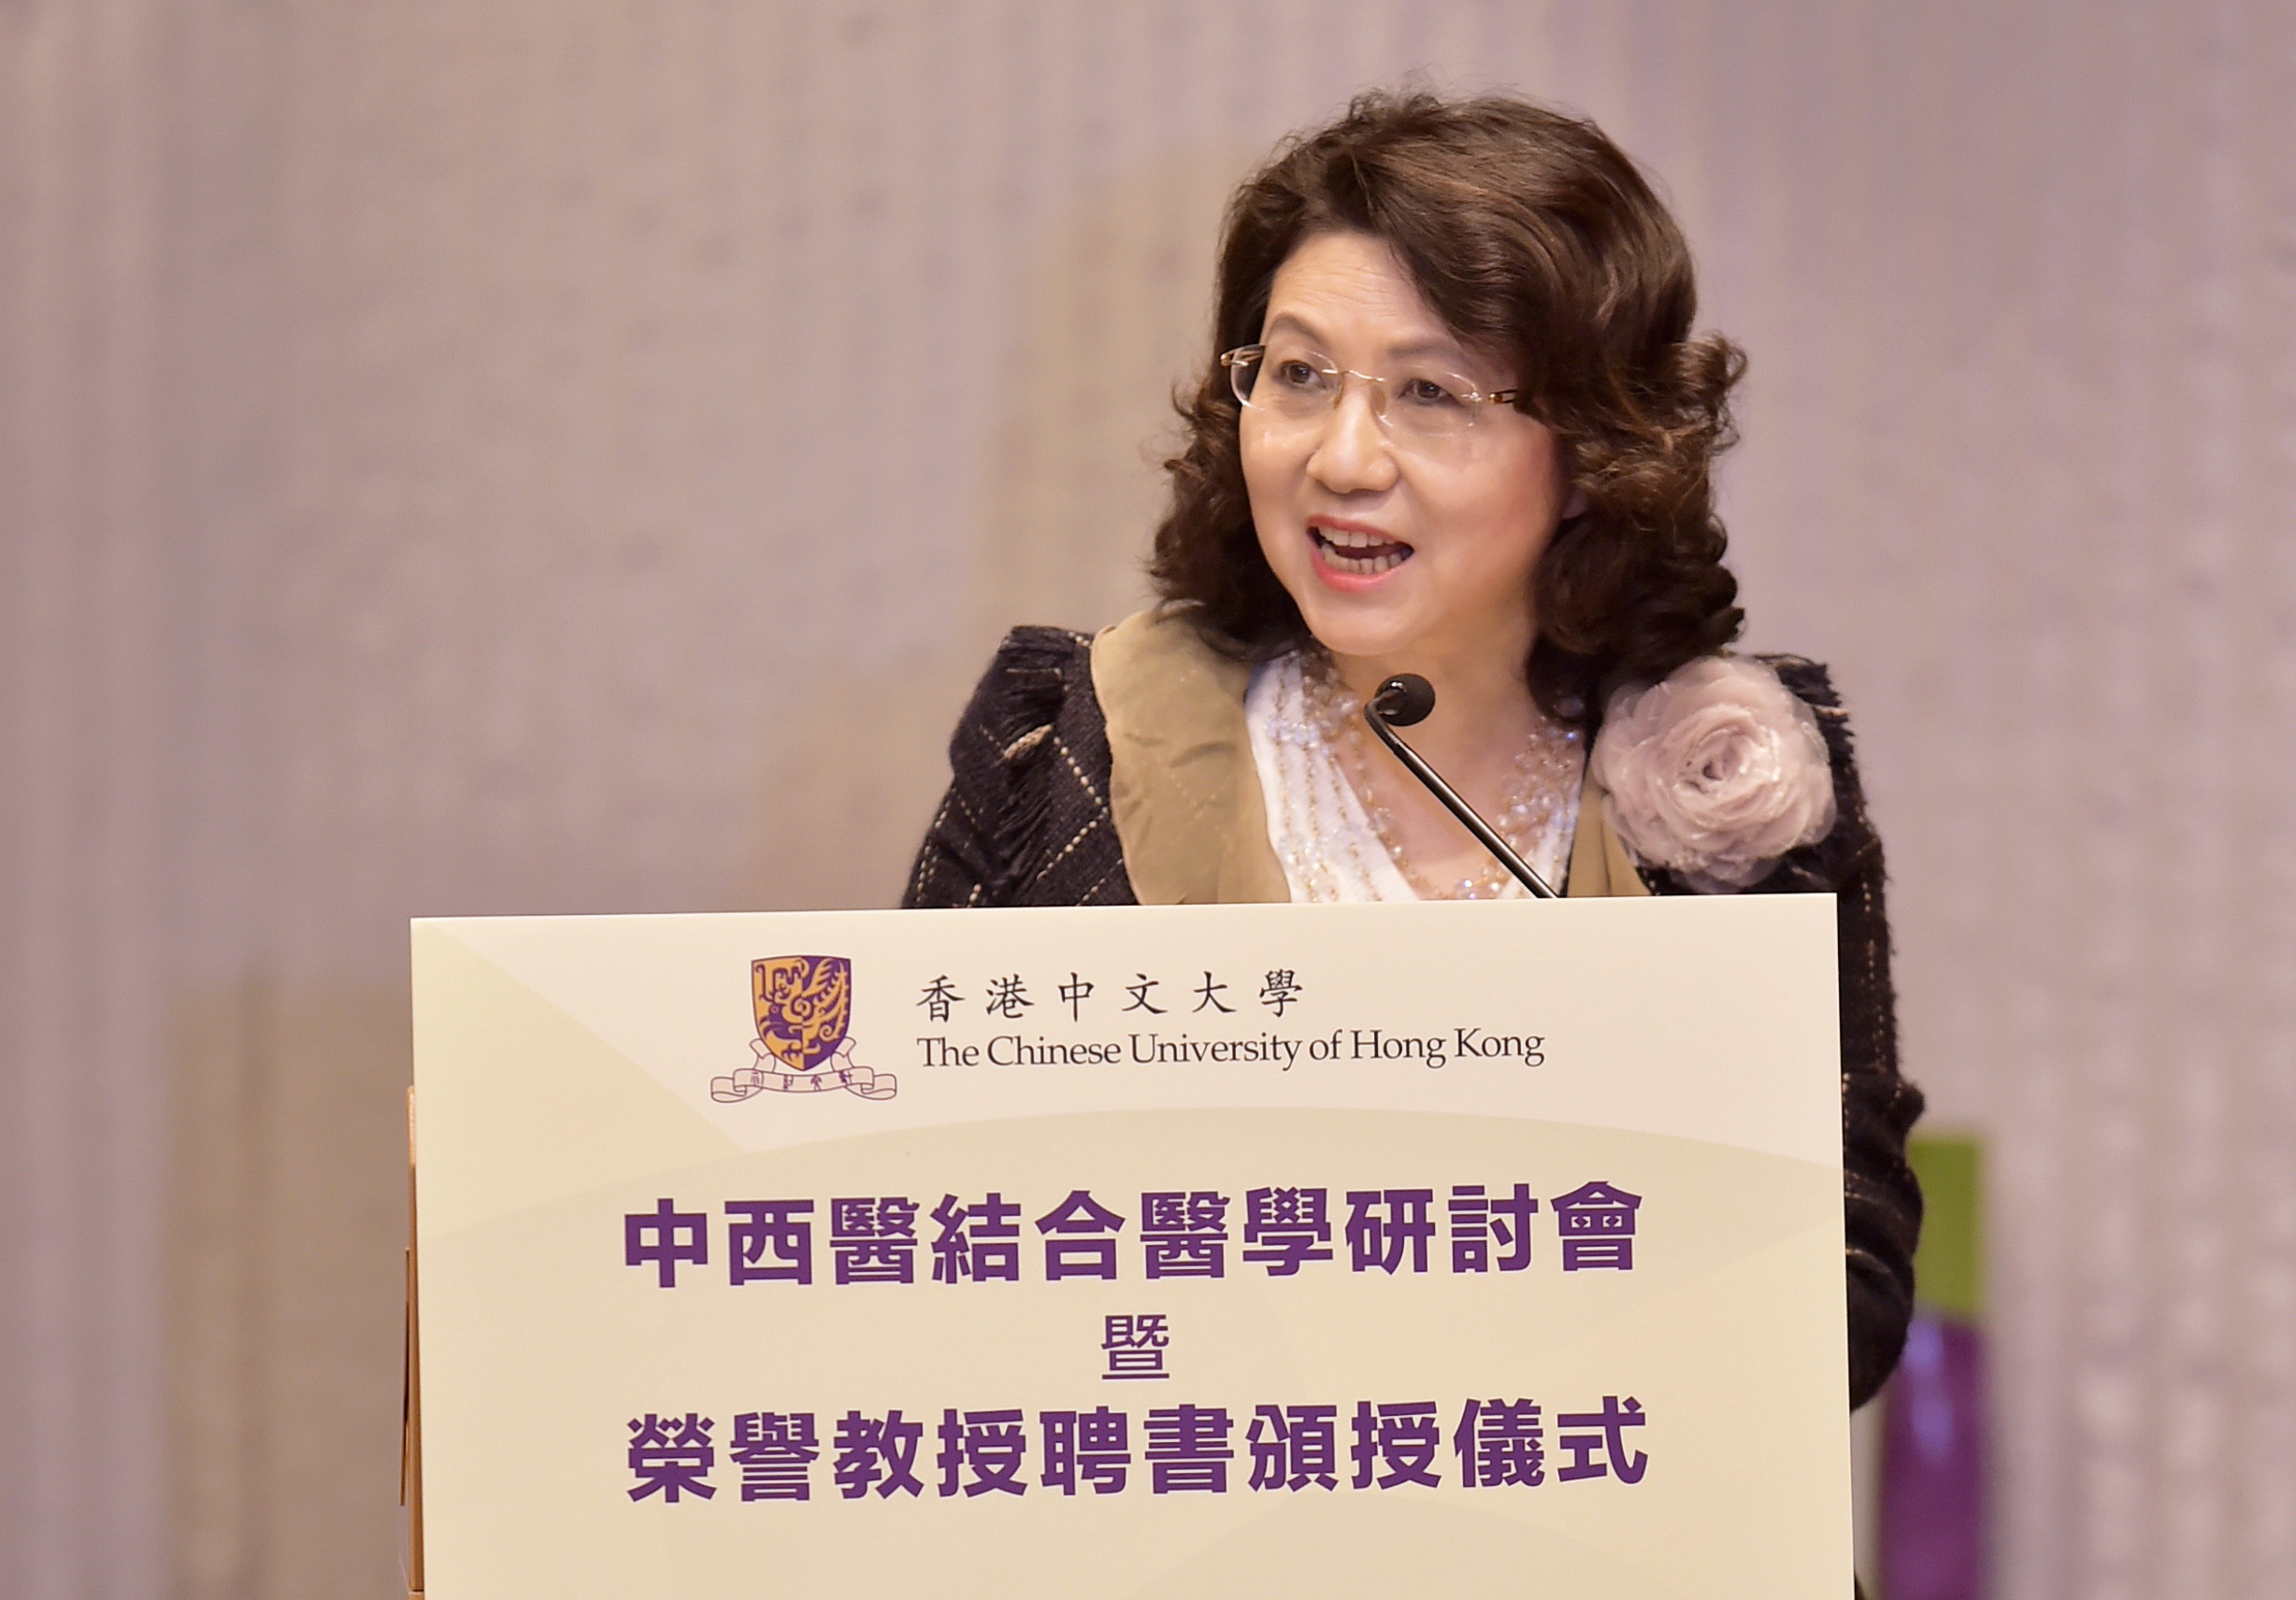 创新科技署署长暨中药研究及发展委员会主席王荣珍女士致辞。